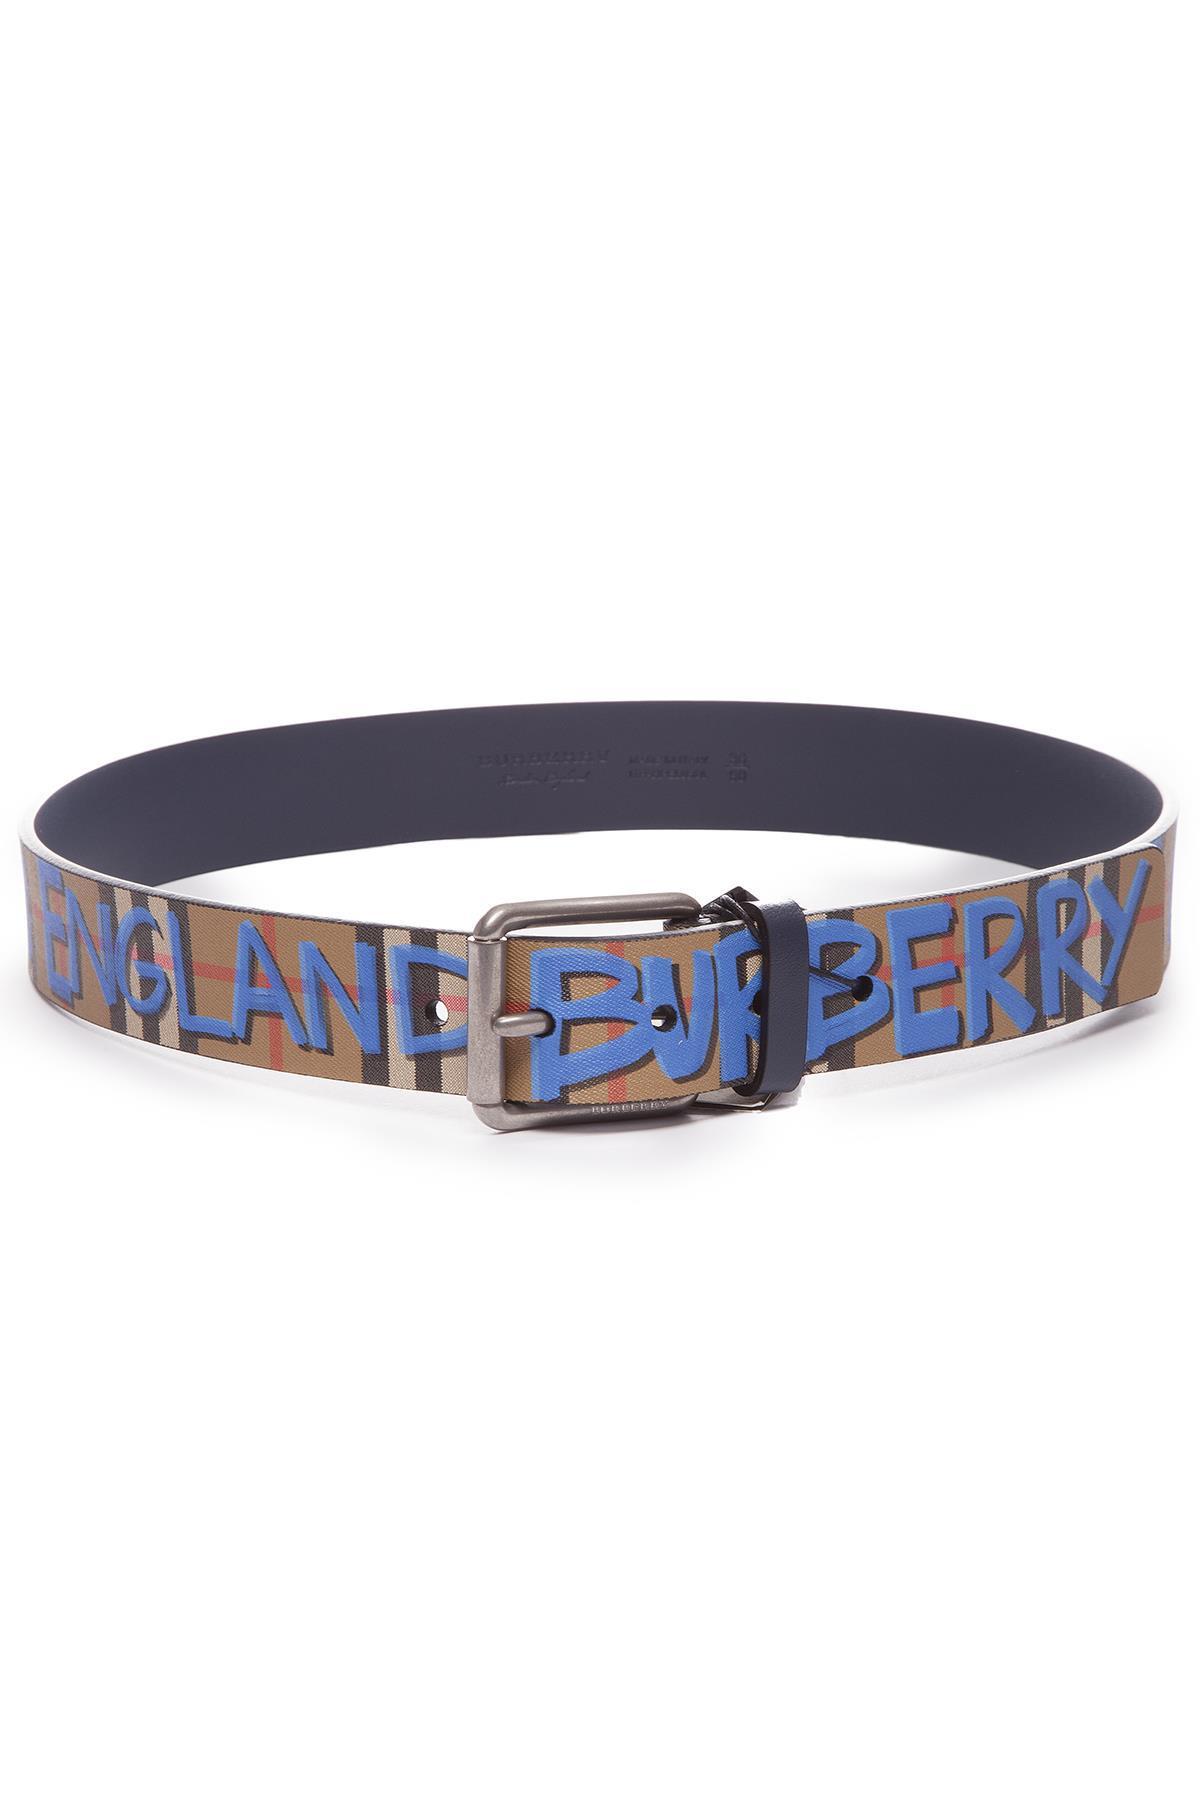 burberry belt blue